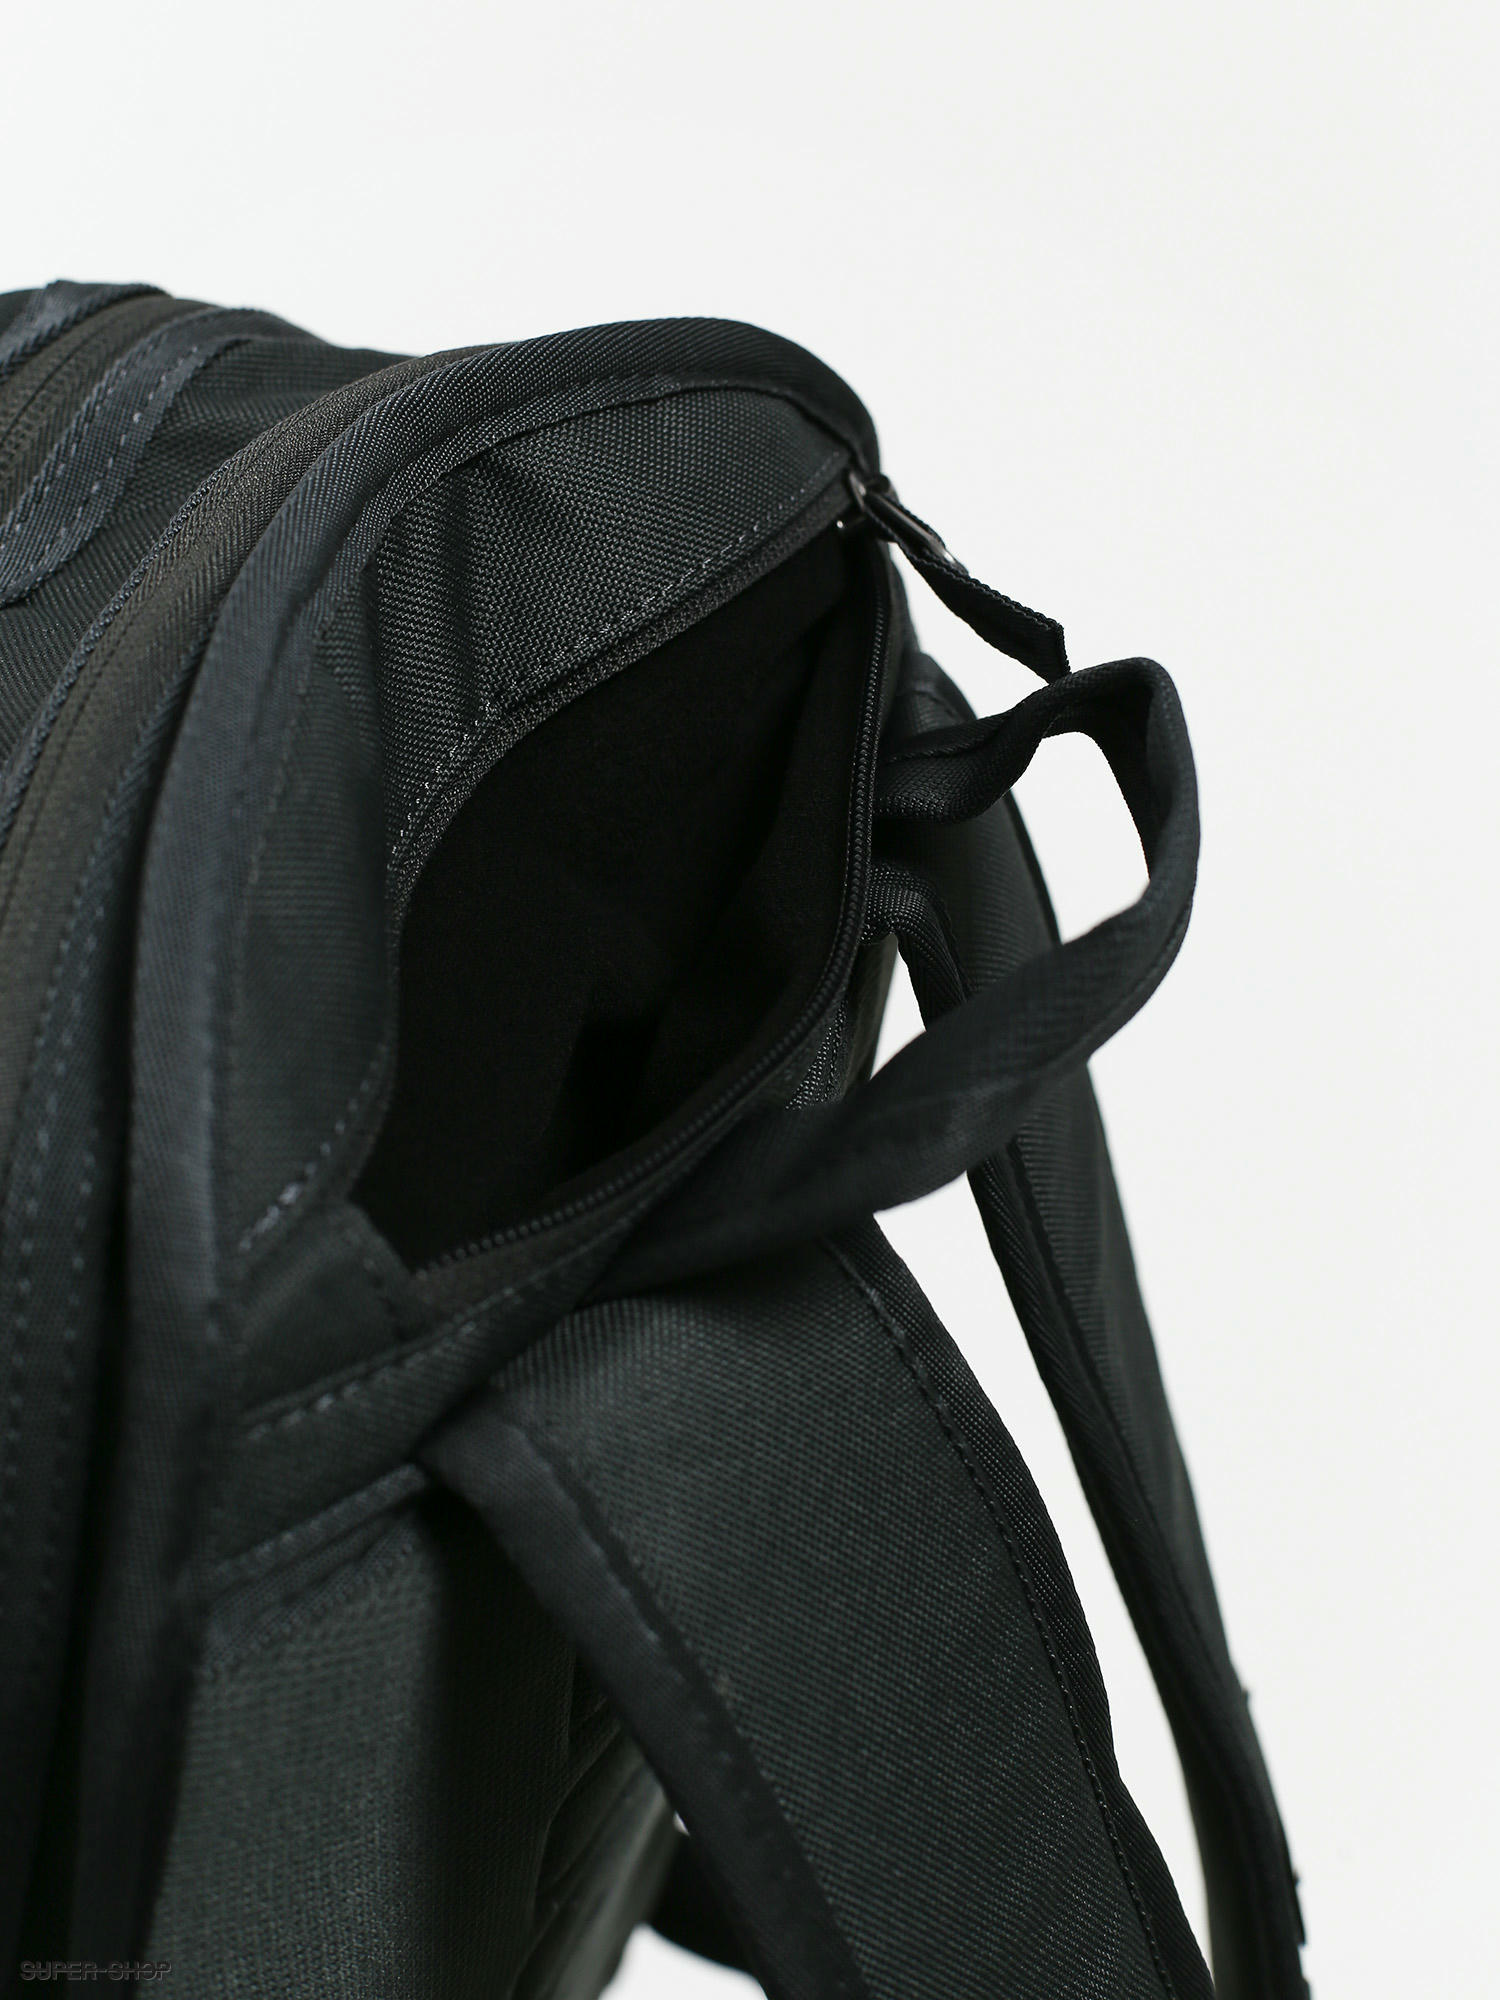 أنا أتناول الفطور يغيب ودود Nike Sb Premium Leather Backpack Cazeres Arthurimmo Com